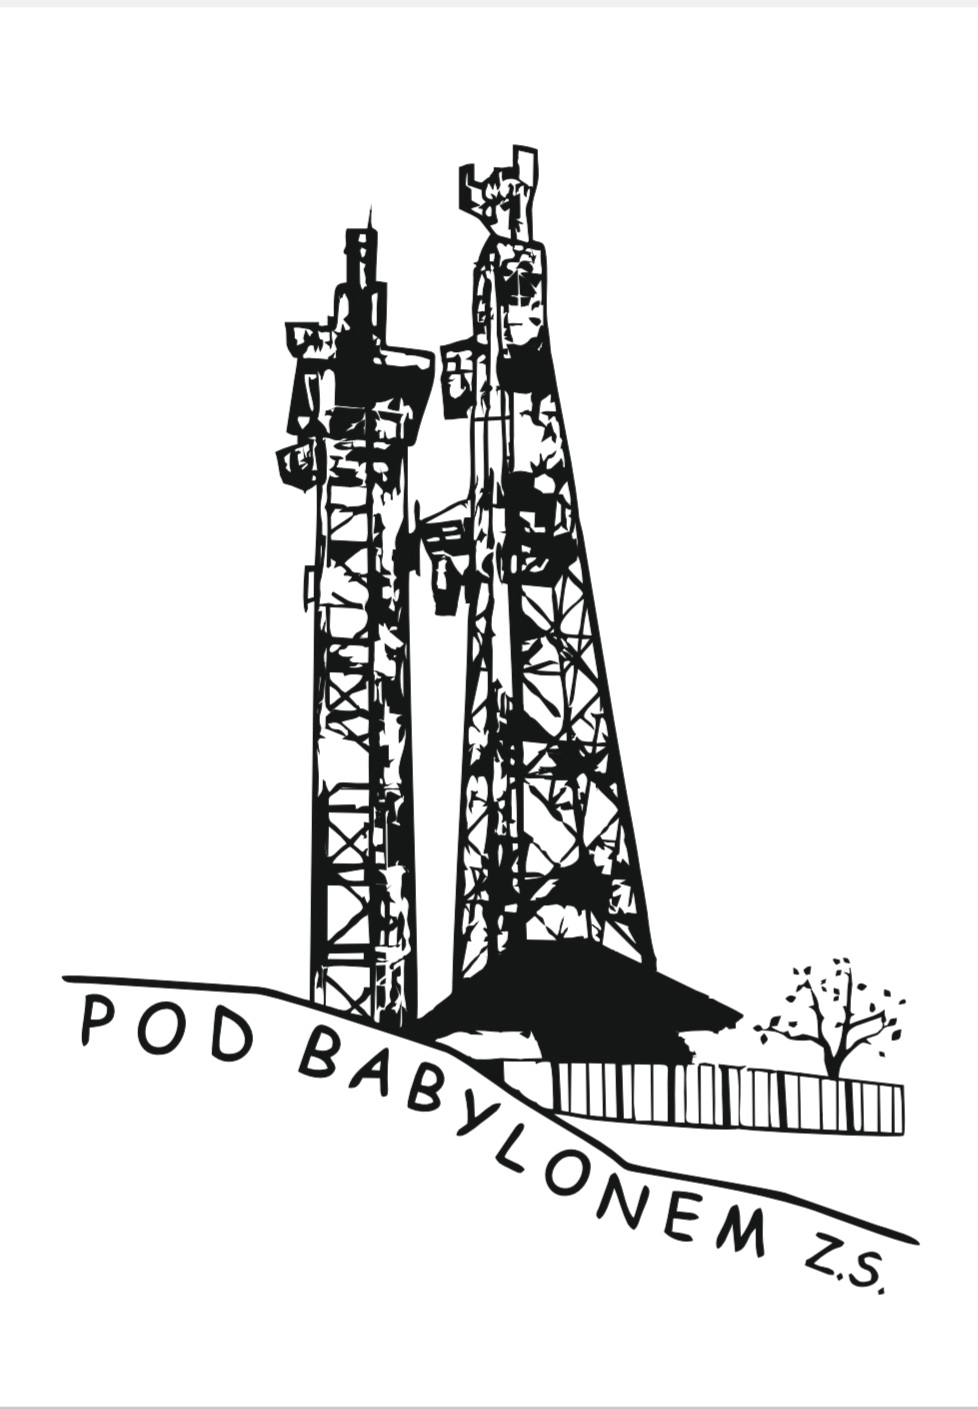 logo-podbabylonem